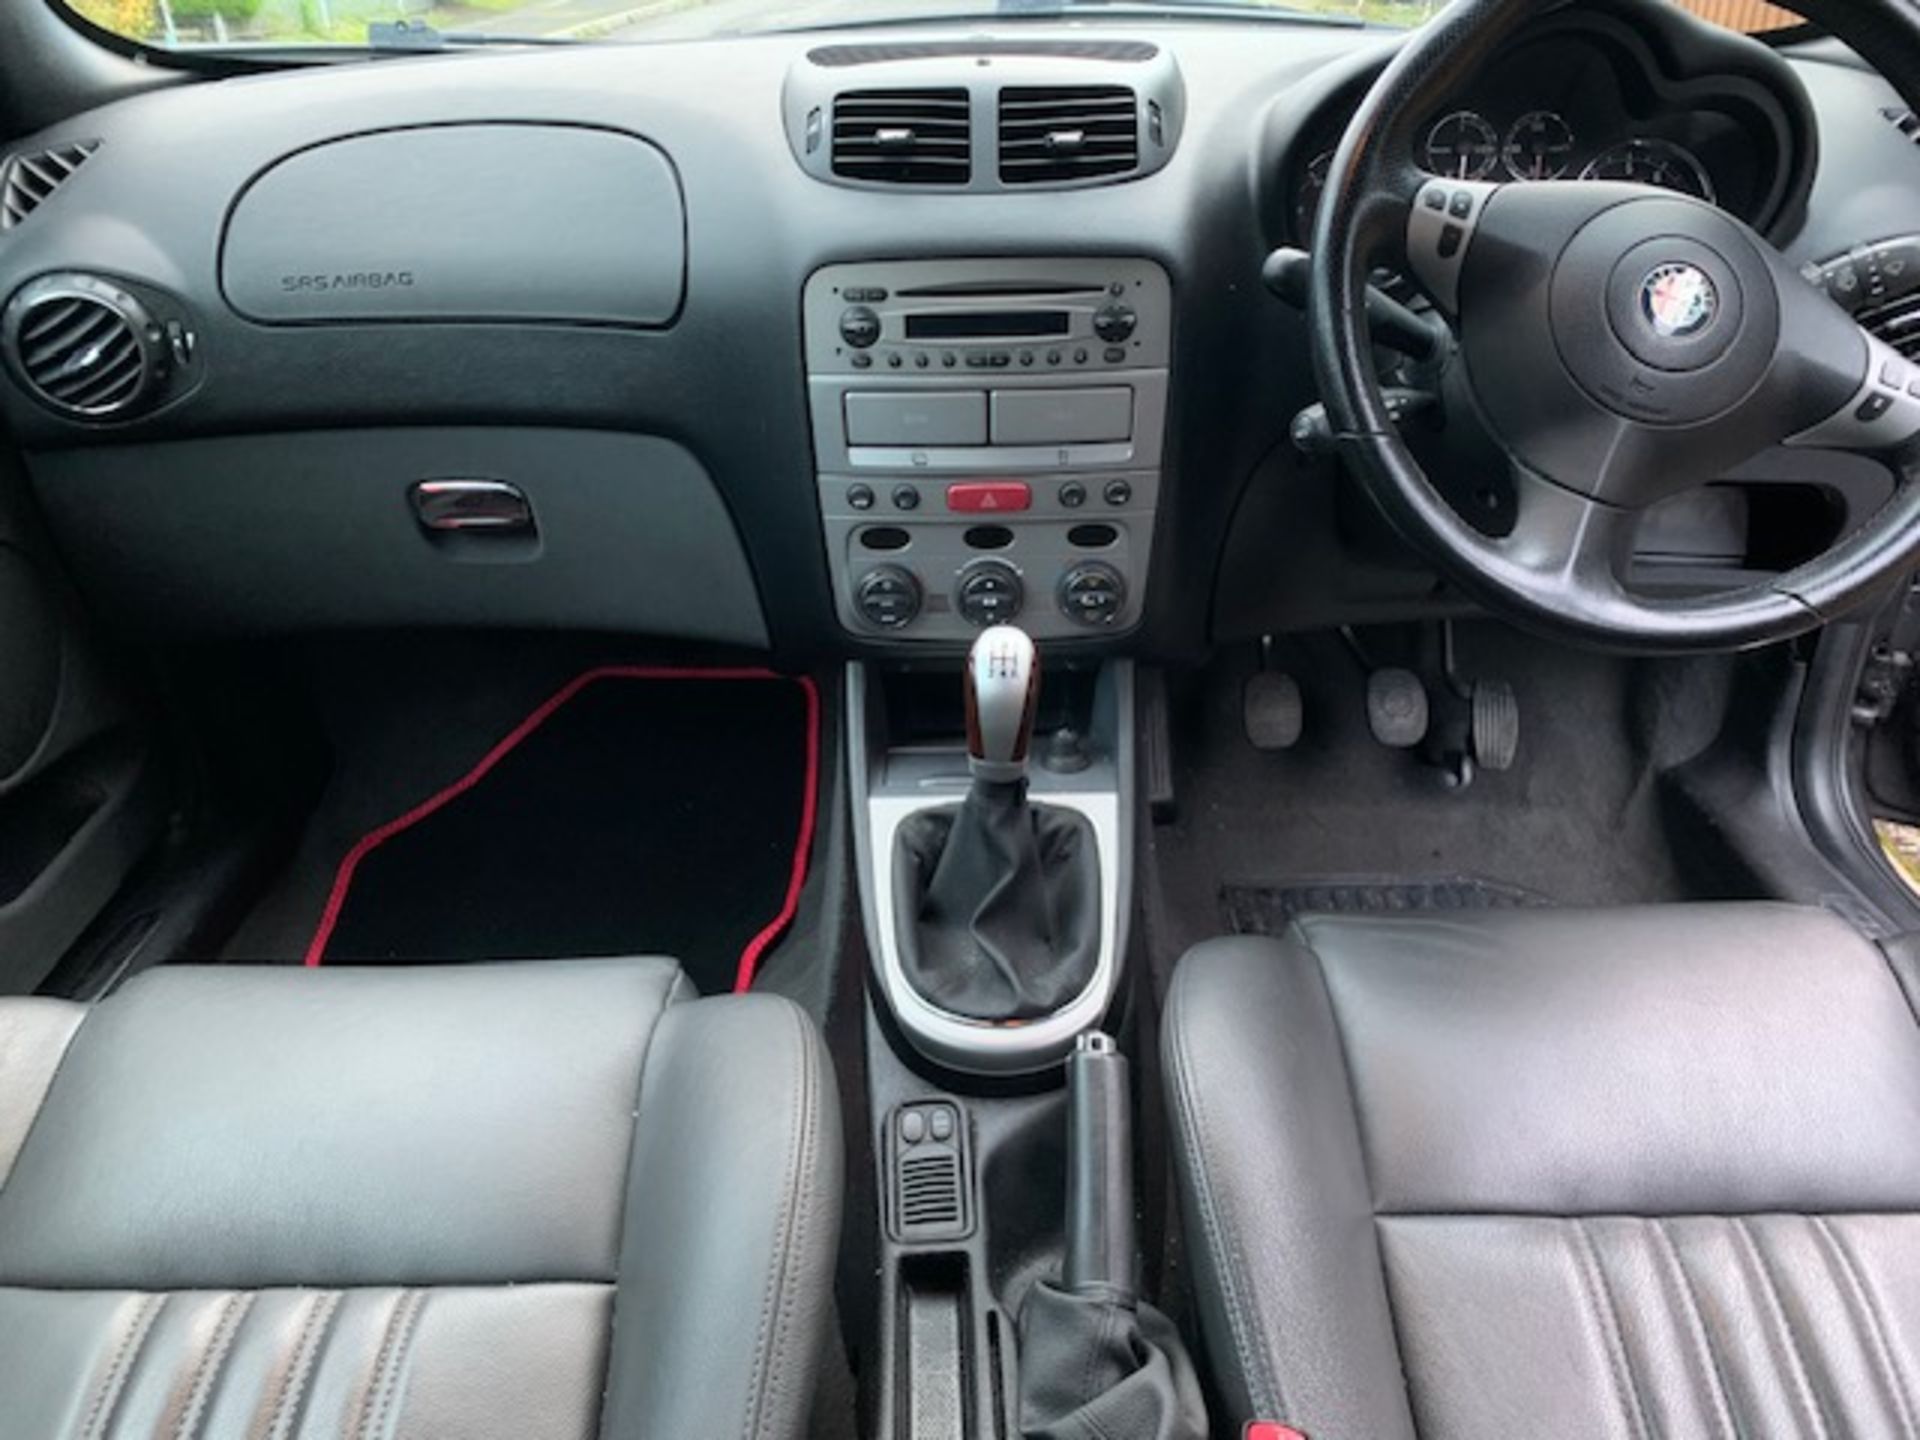 06/06 ALFA ROMEO 147 TS TI SE - 1598cc 5dr Hatchback (Black, 96k) - Bild 10 aus 11